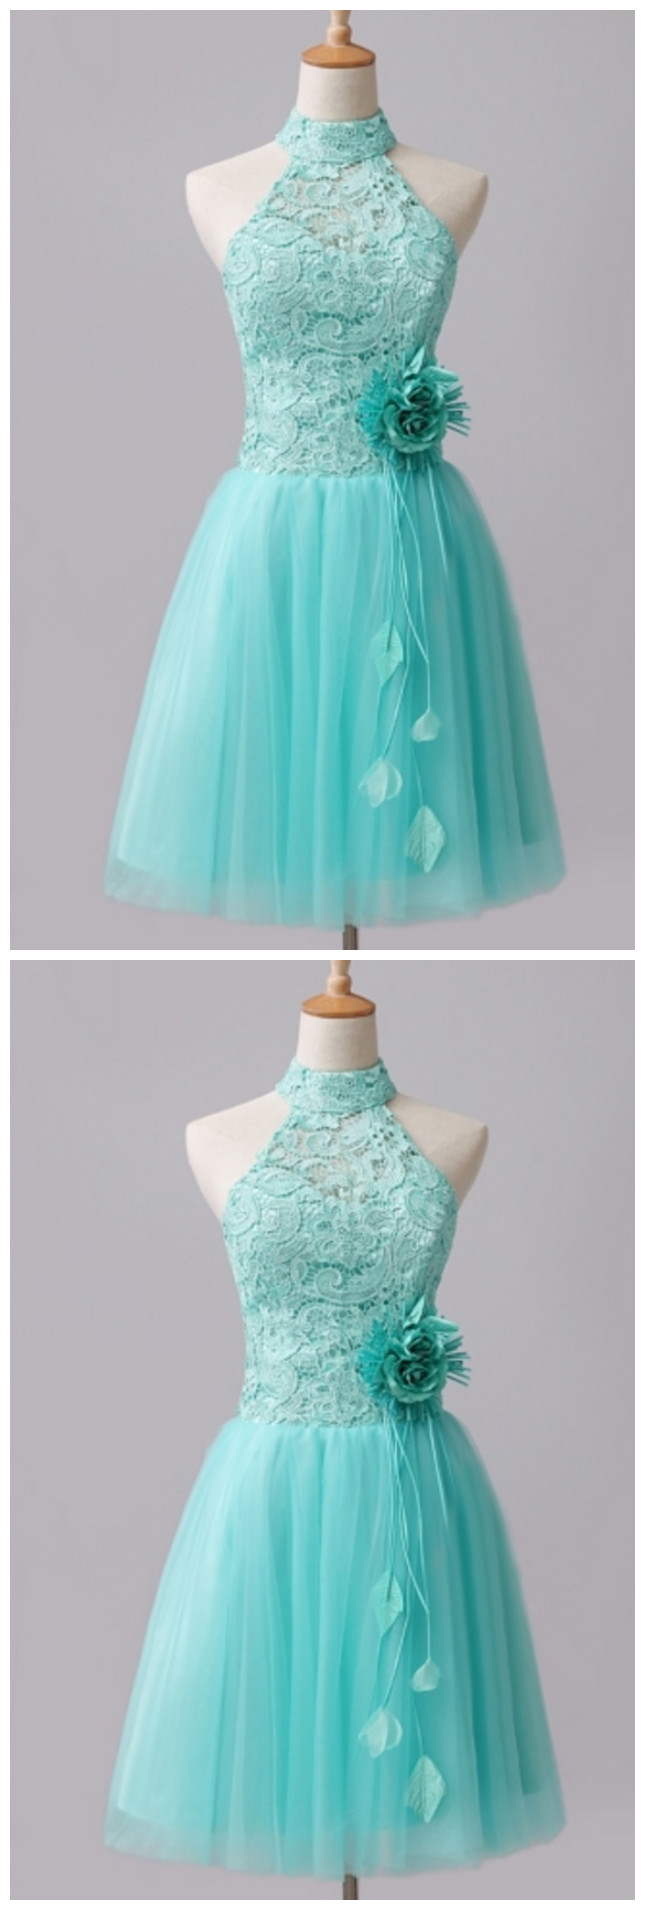 Mint A-line Halter Lace Flowers Short Homecoming Dresses, Homecoming Dress,prom Dress With Flower